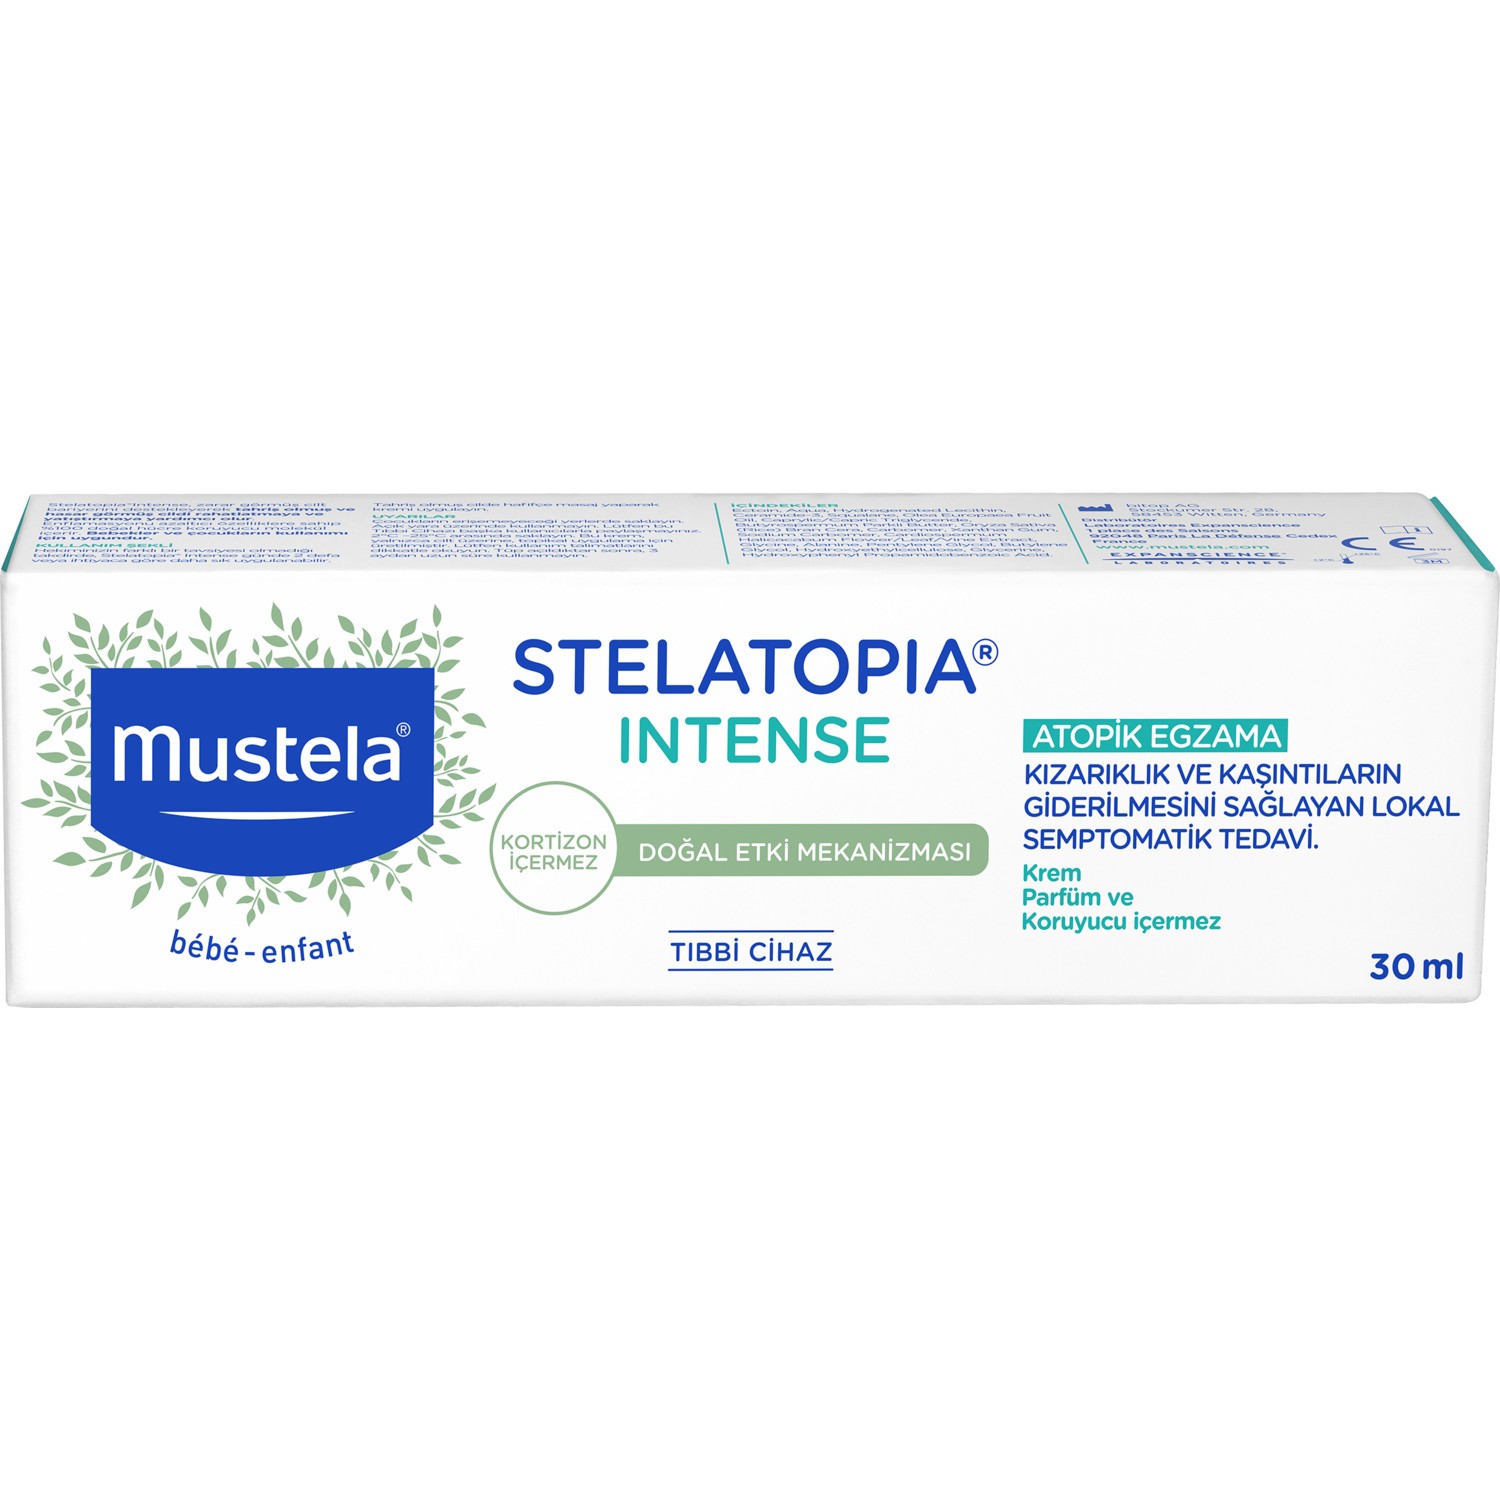 Mustela Stelatopia Intense 30 ml, Крем Mustela Sleptopia Intense от покраснения и экземы 30 мл  - купить